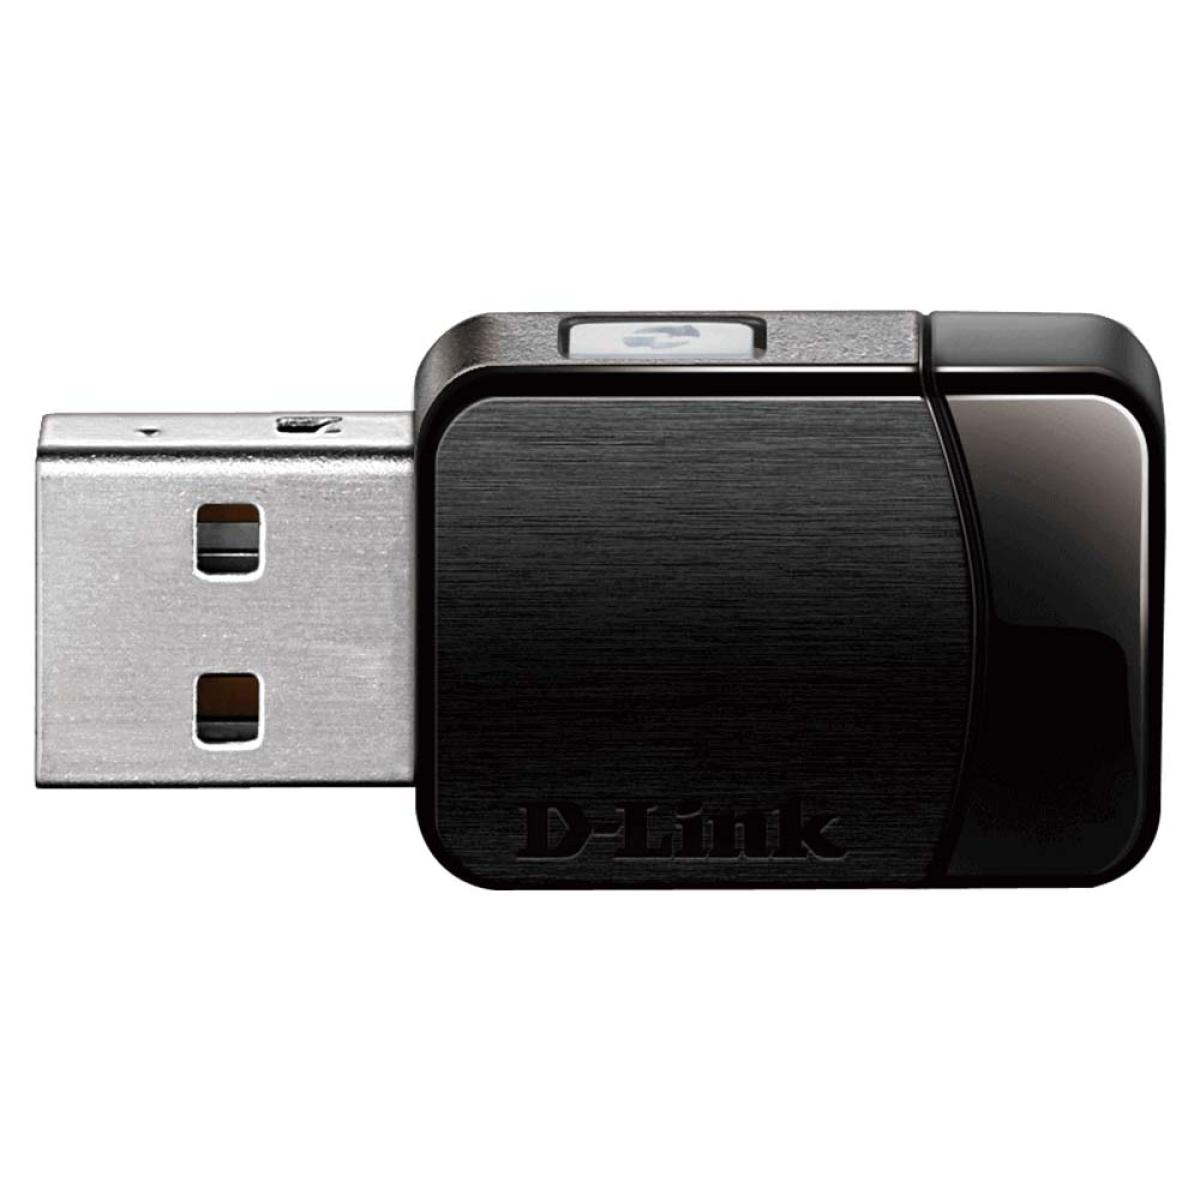 D-Link DWA-171 AC600 MU-MIMO Wi-Fi USB Adapter